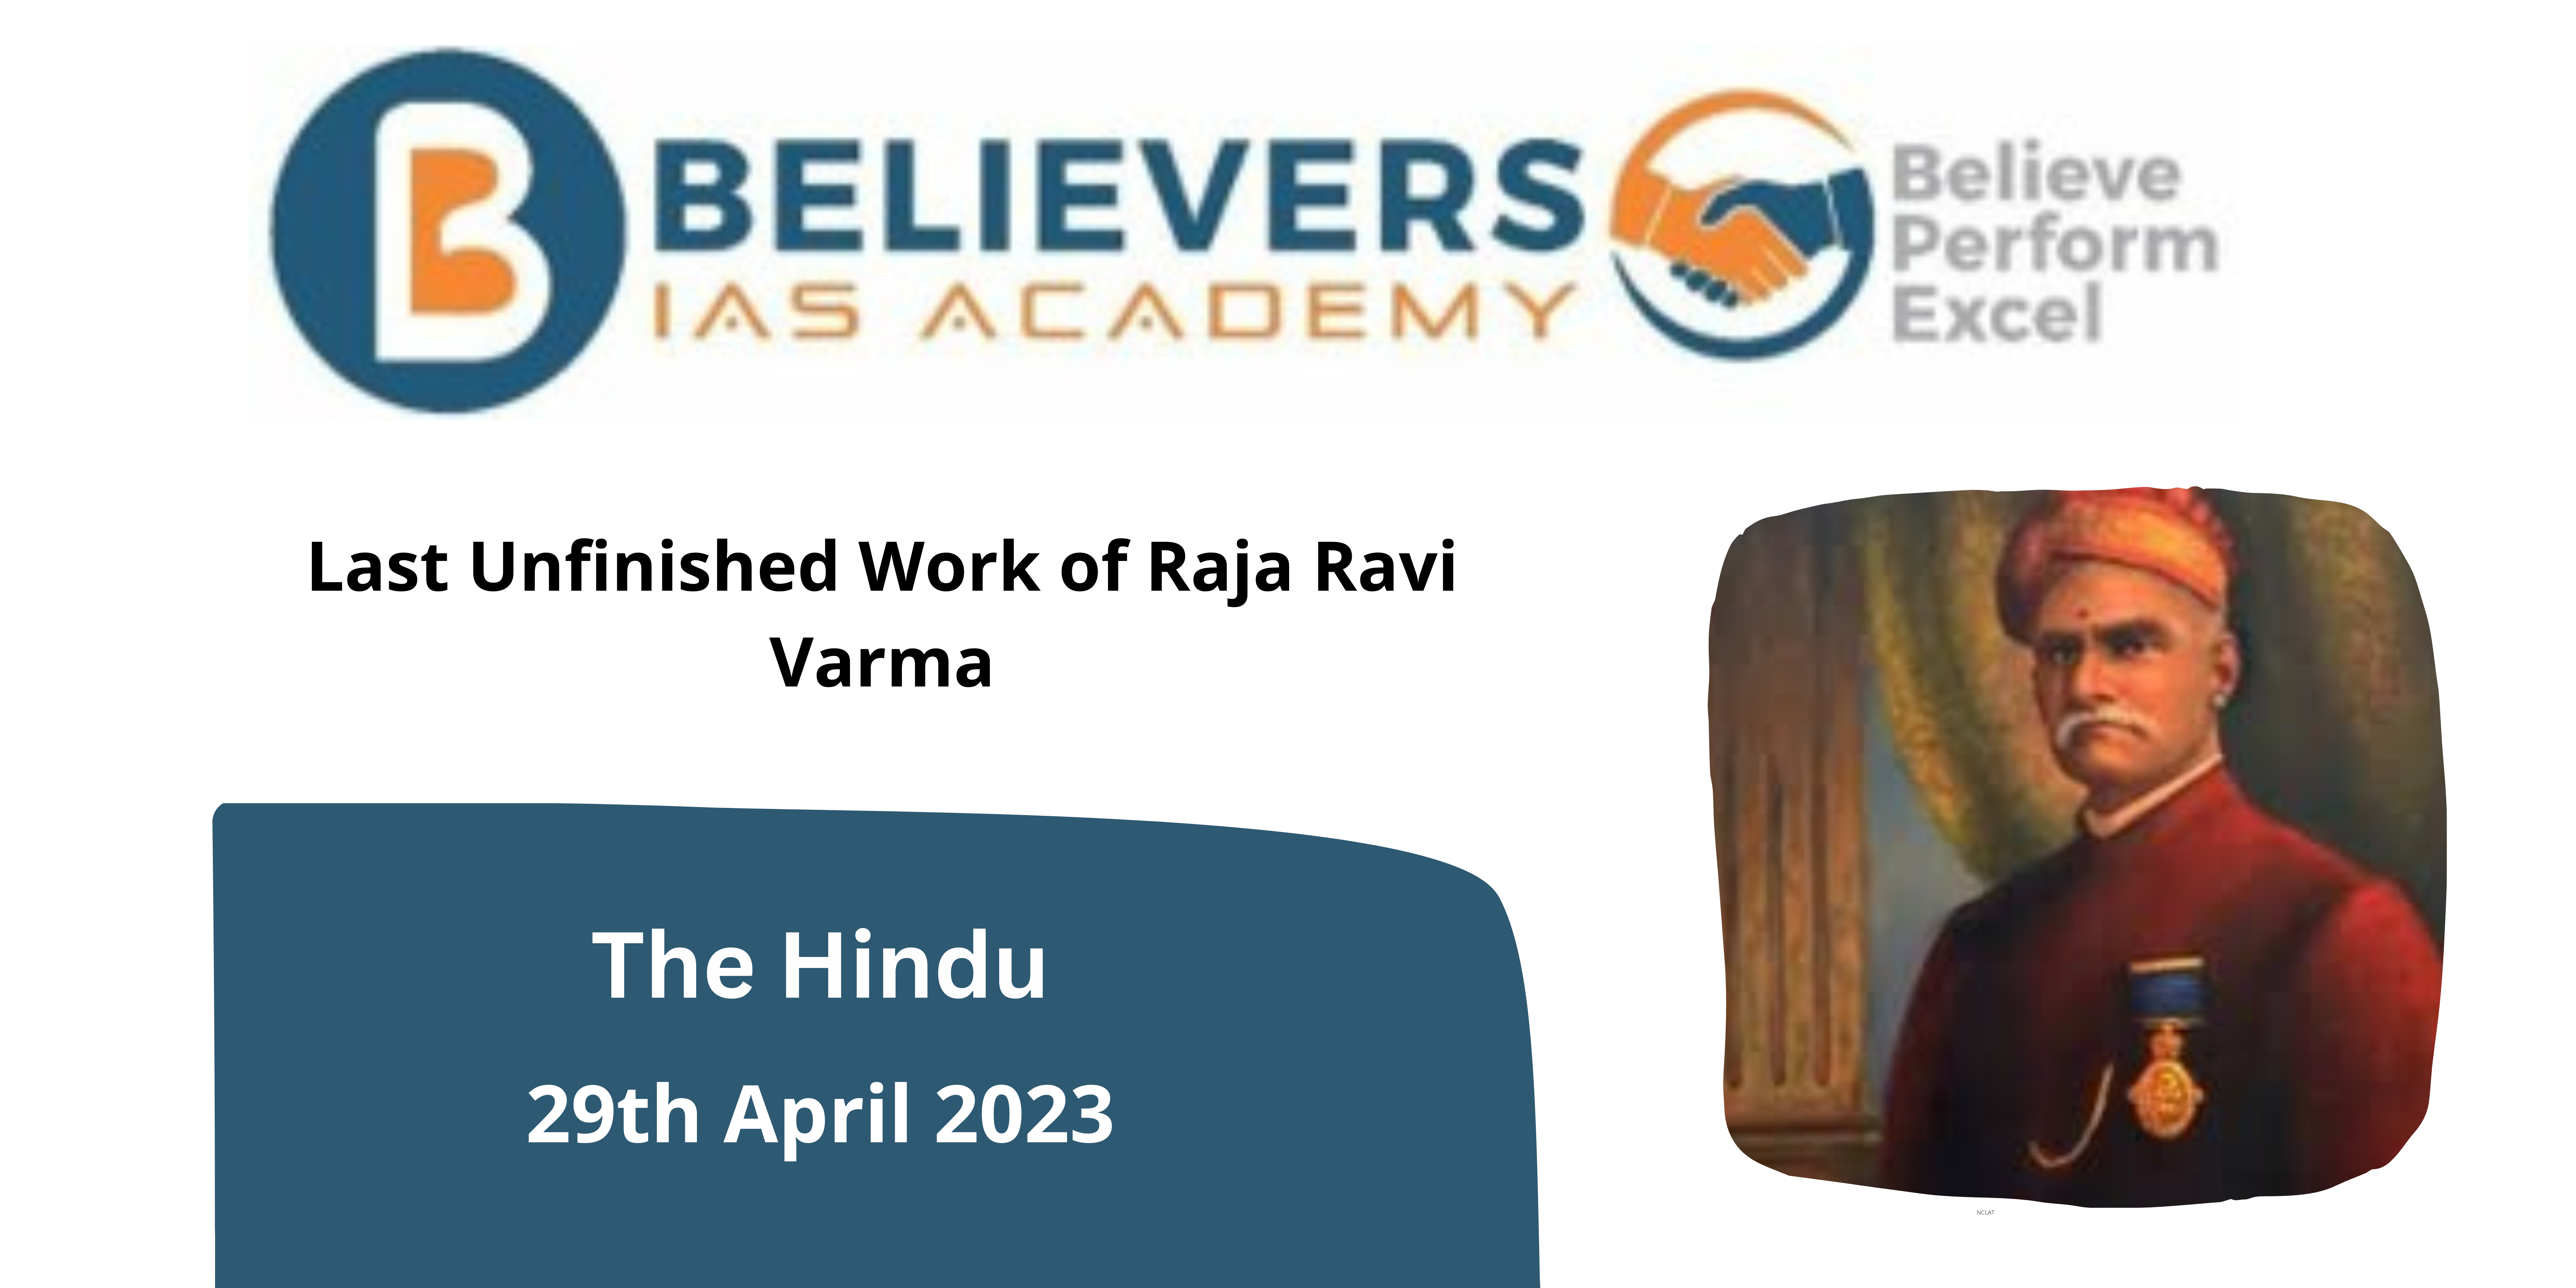 Last Unfinished Work of Raja Ravi Varma